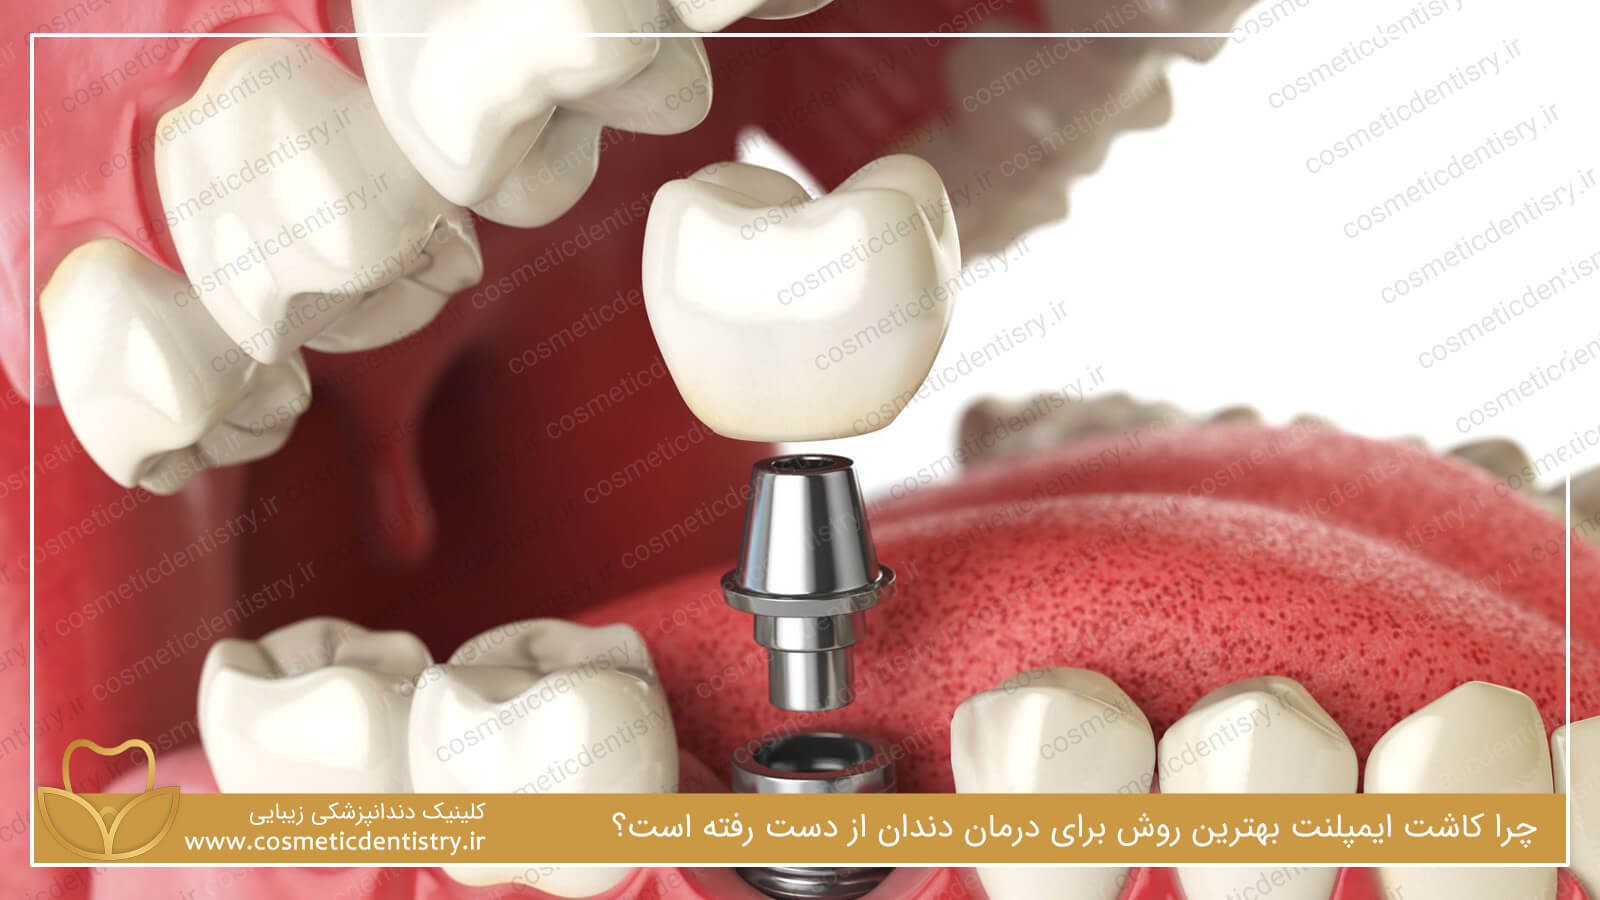 چرا کاشت ایمپلنت بهترین روش برای درمان دندان از دست رفته است؟